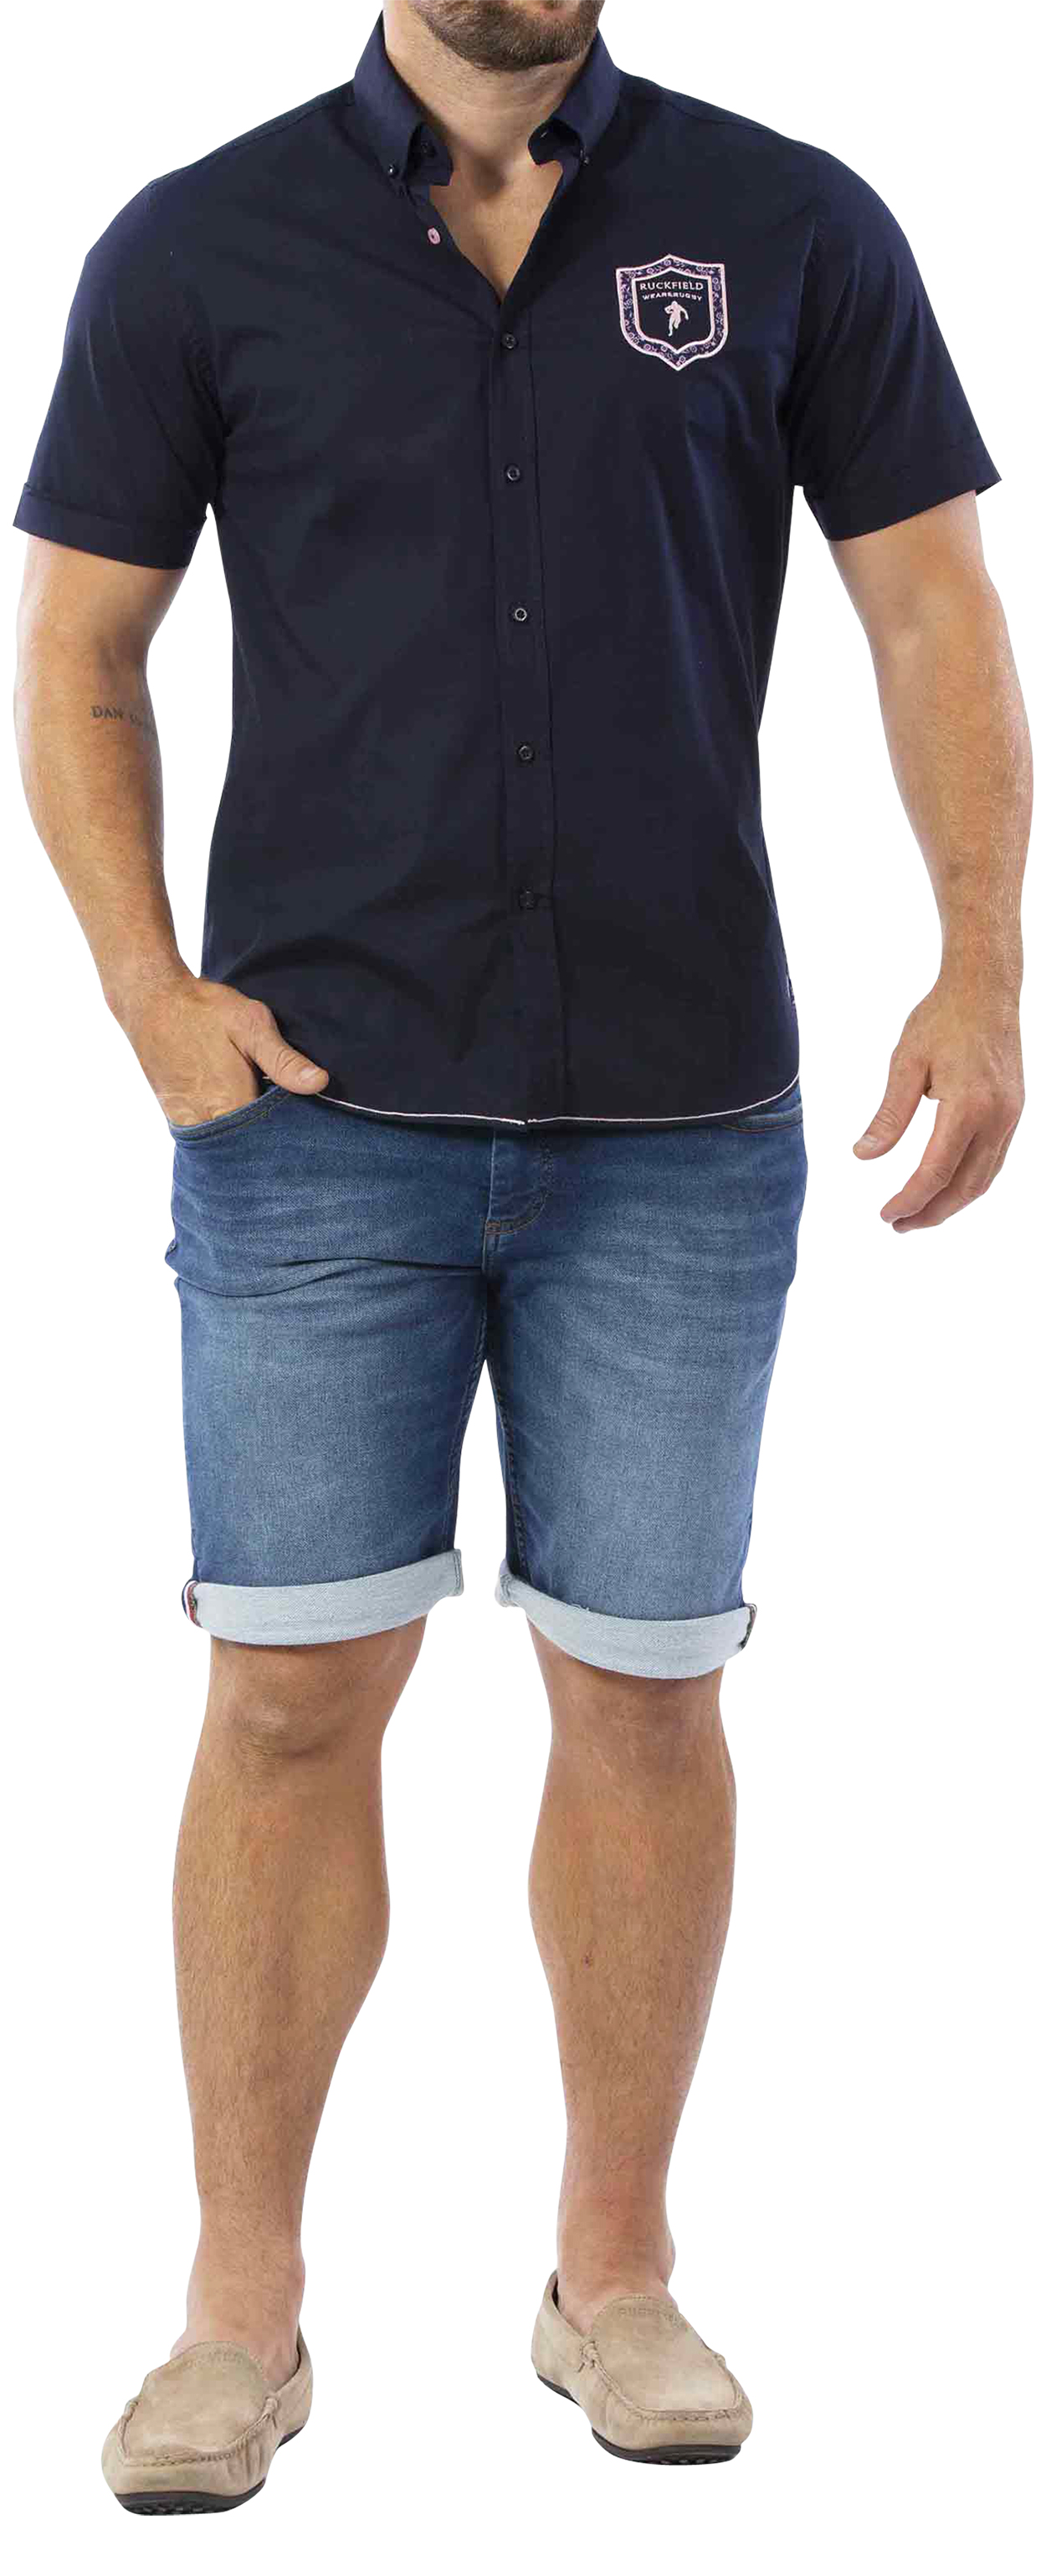 chemise ruckfield en coton avec manches courtes et col américain bleu marine